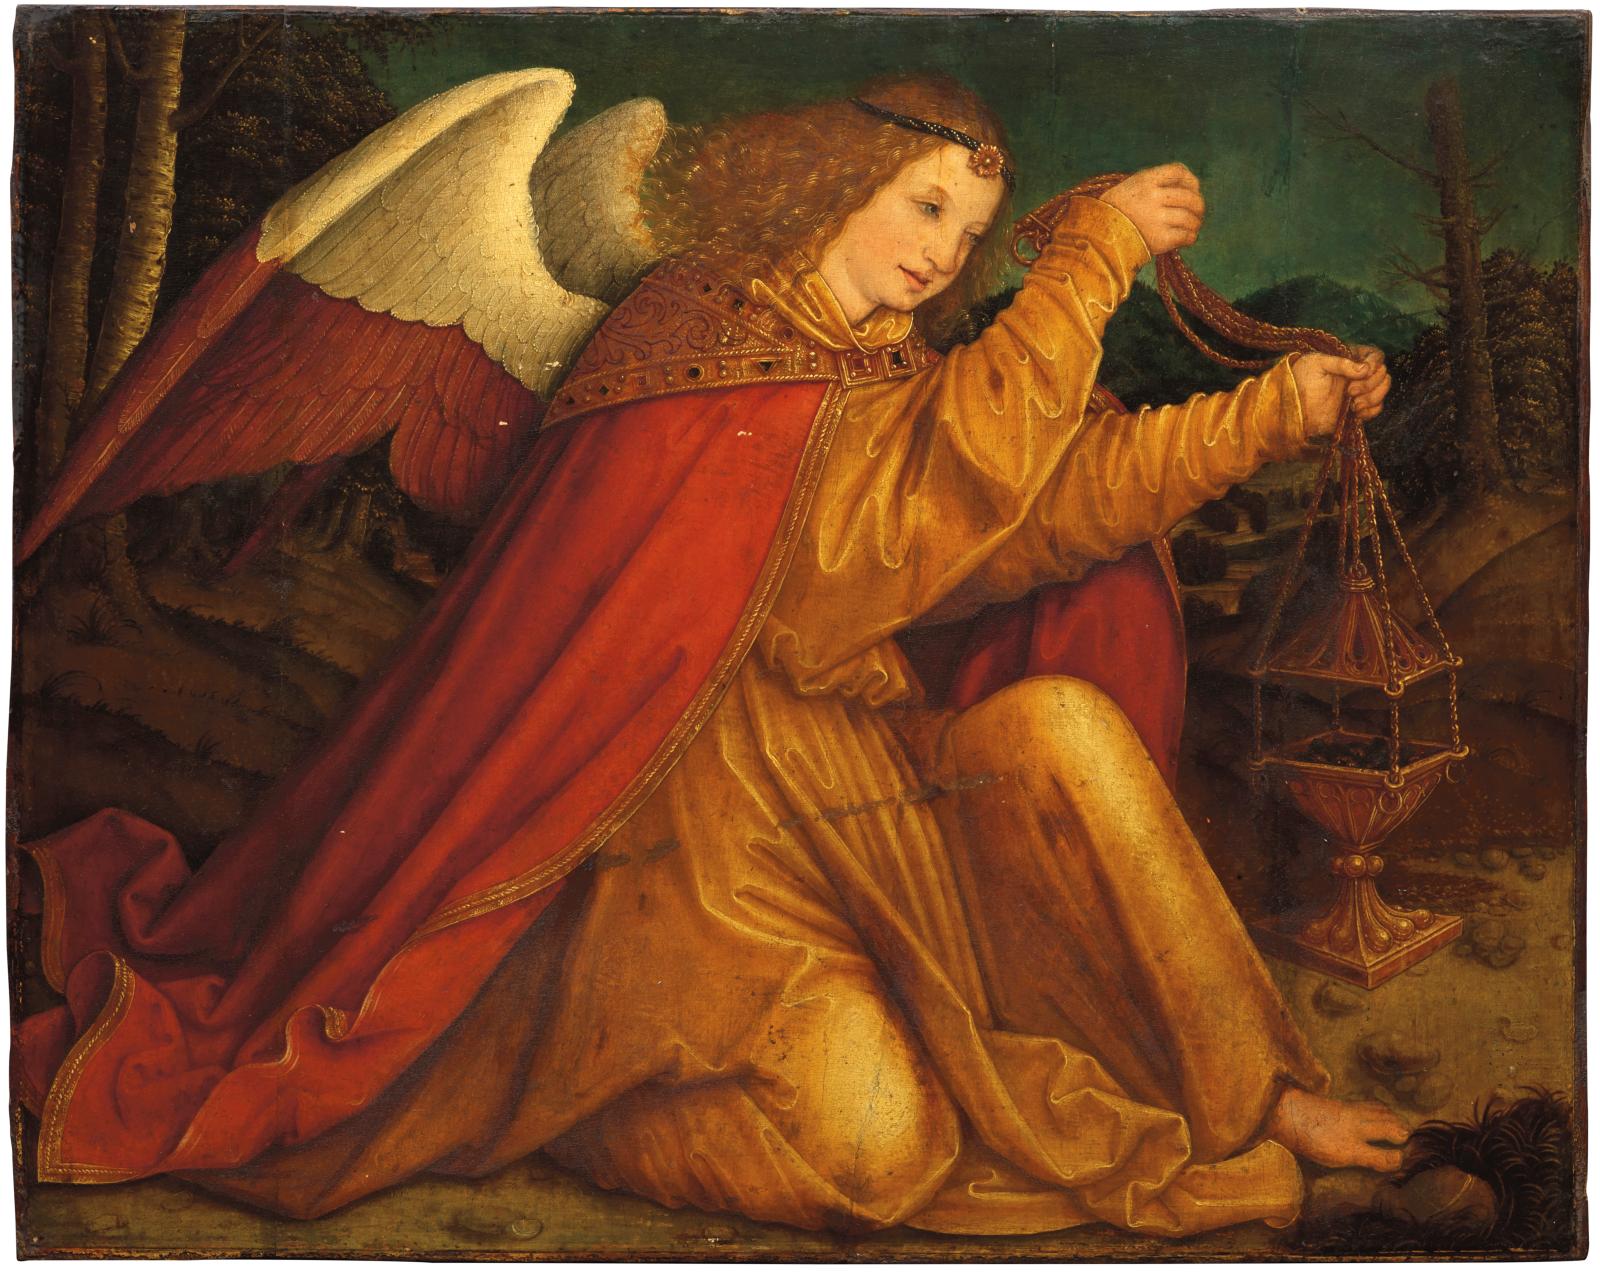 Tolosa, in vendita un capolavoro del Cinquecento tedesco: l'Angelo di Bernhard Strigel